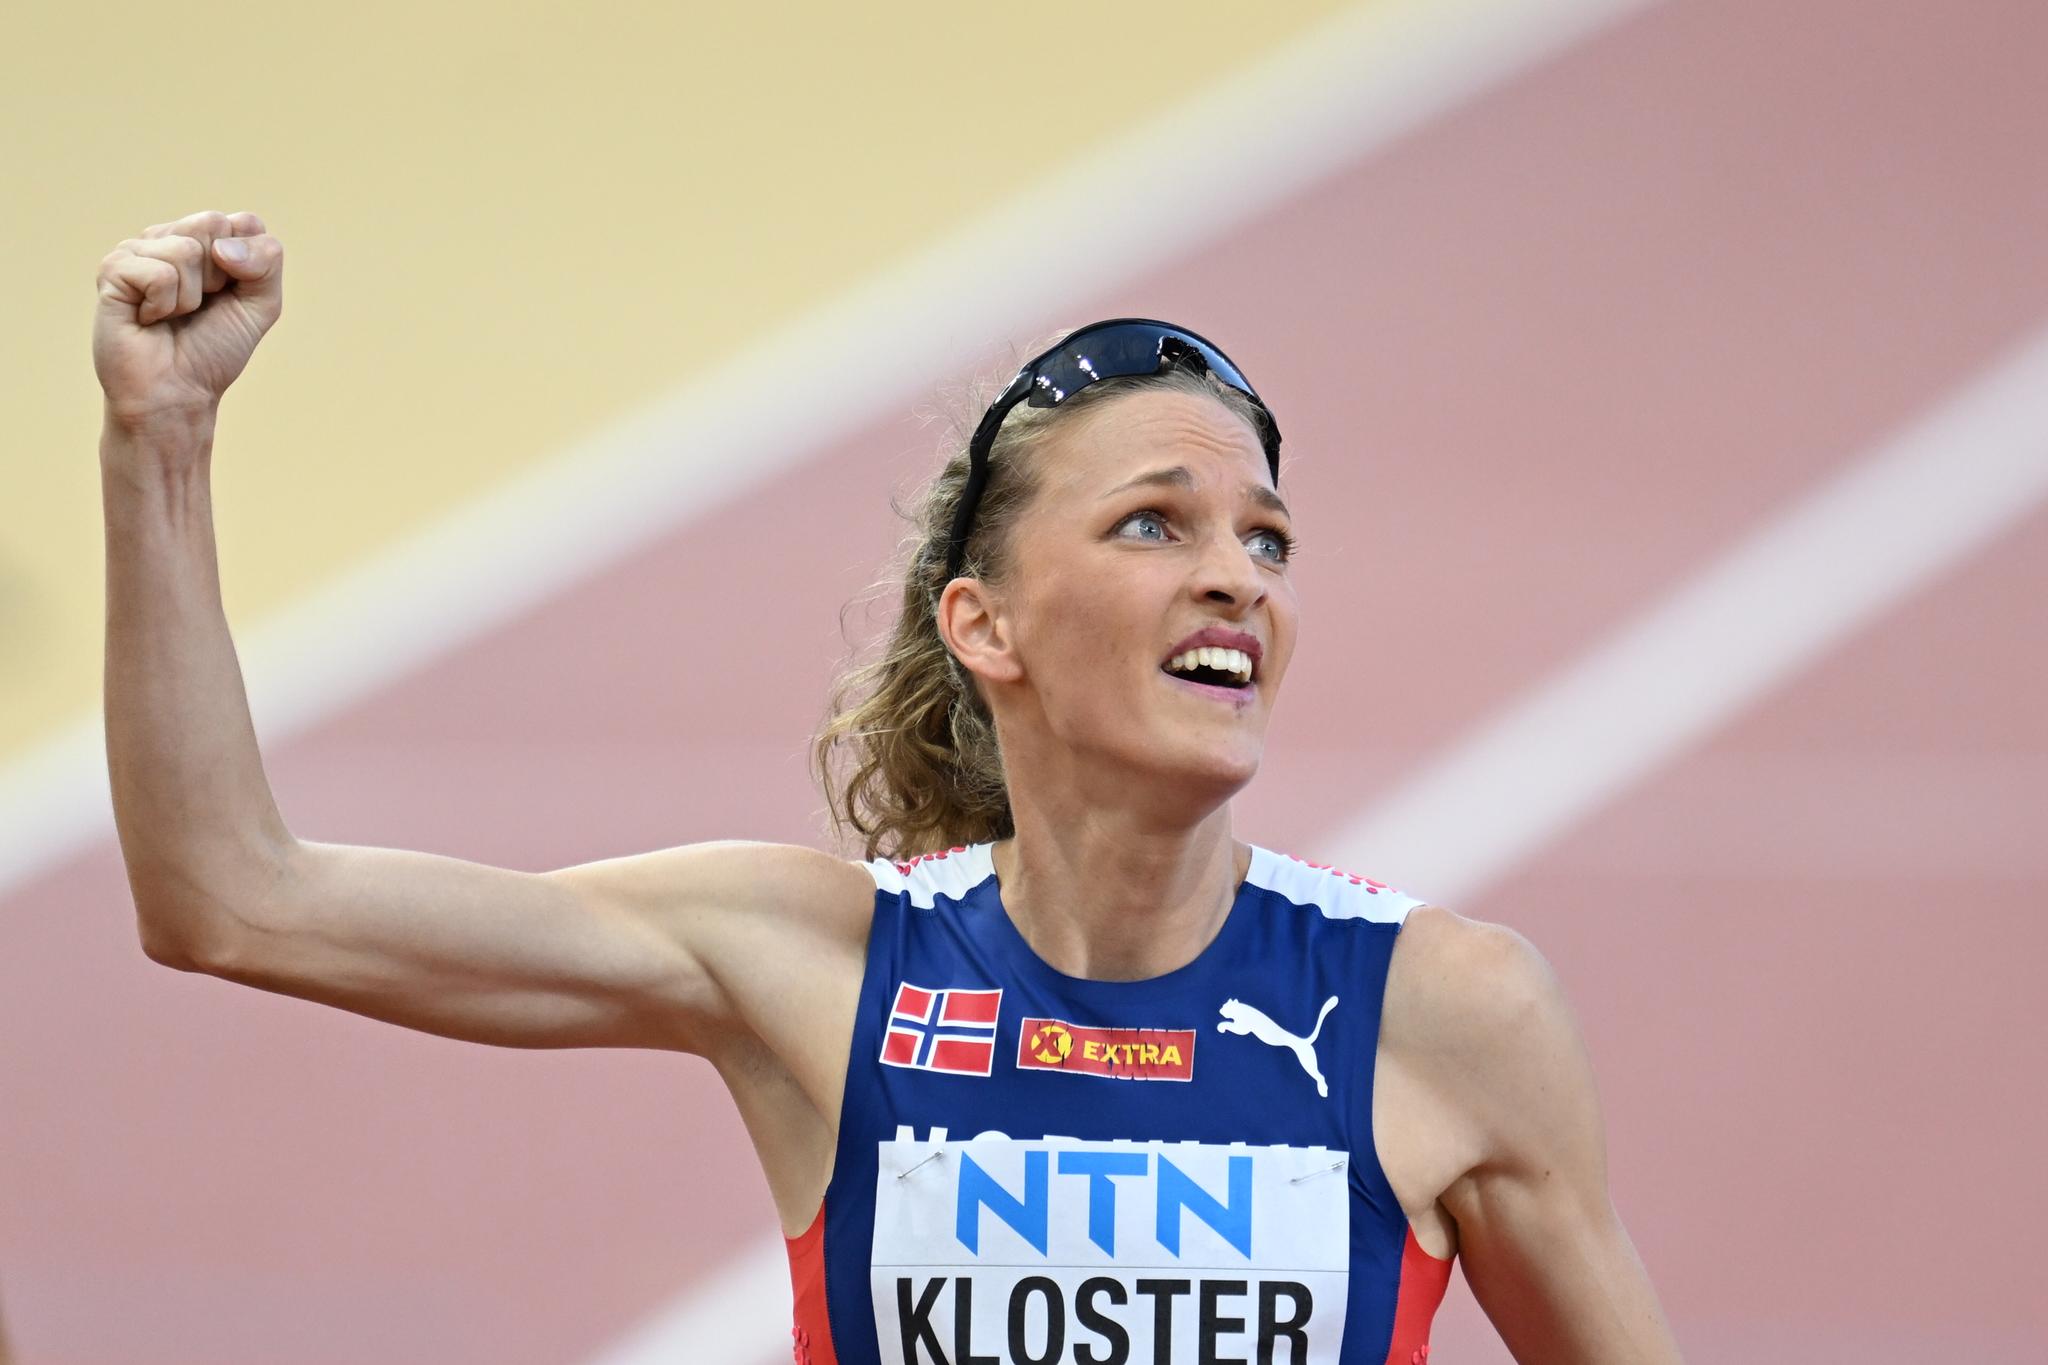 Kloster ha raggiunto le semifinali dei Campionati del mondo nei 400 metri a ostacoli